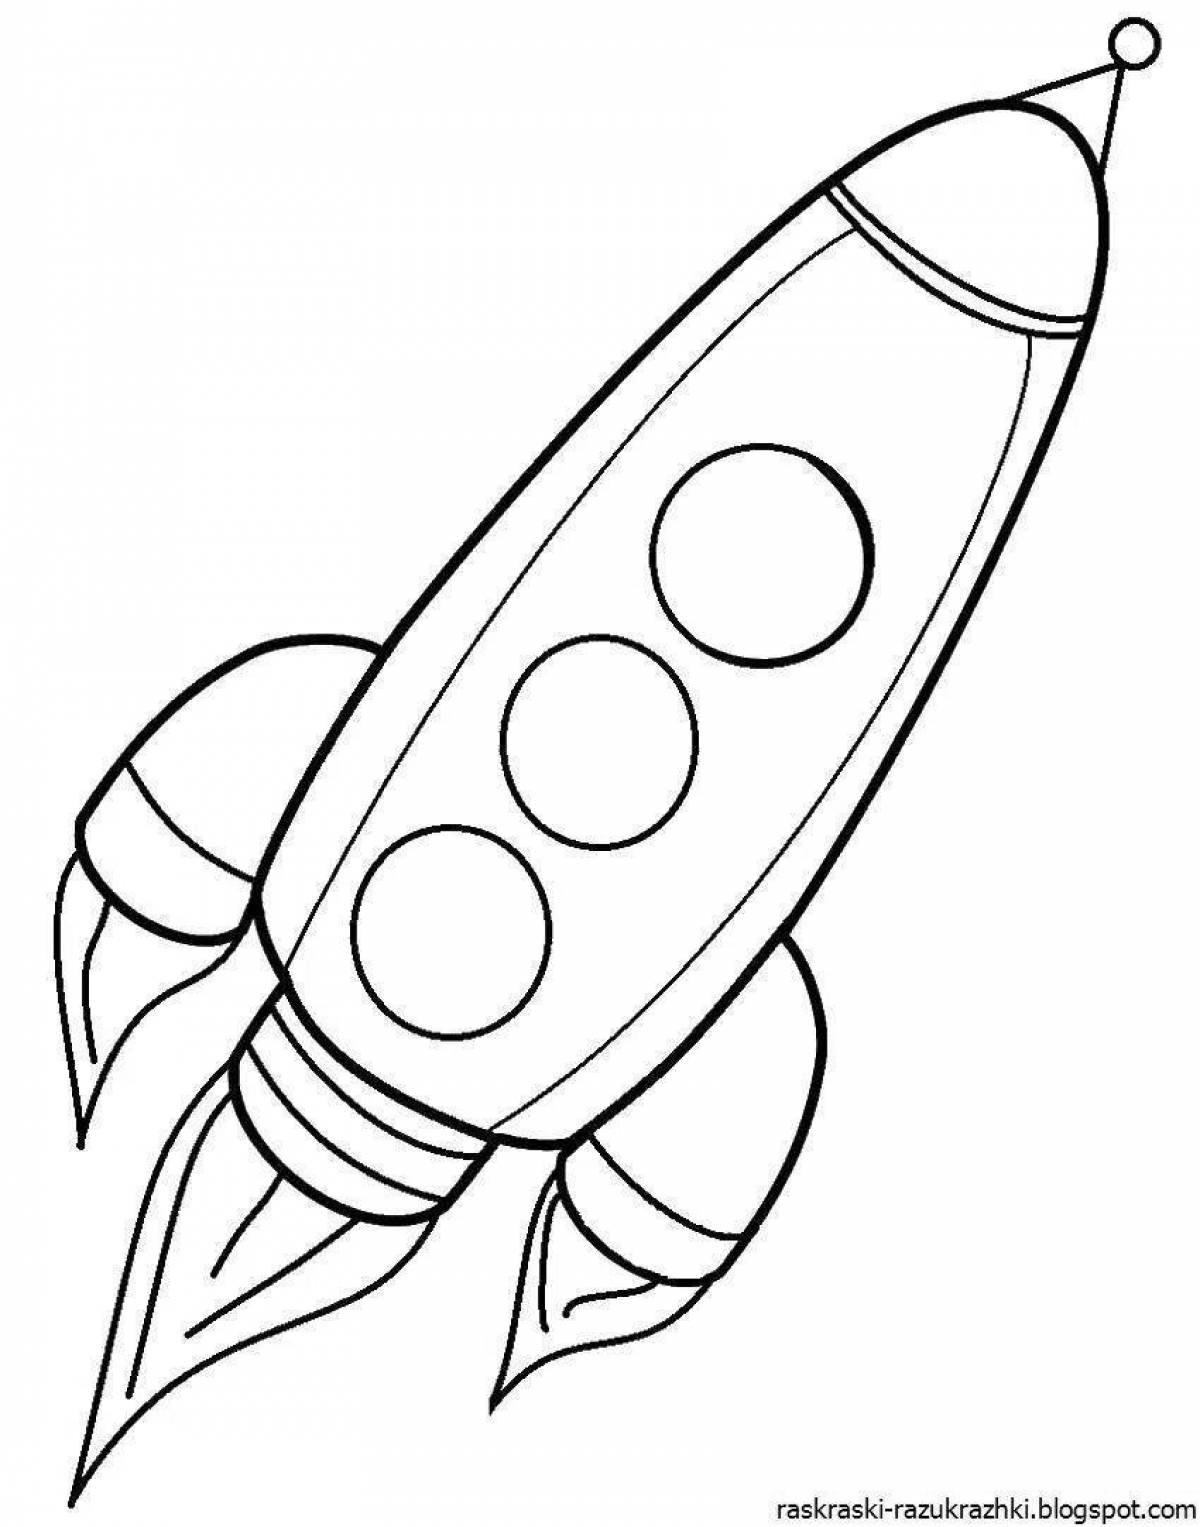 Фантастическая ракета-раскраска для детей